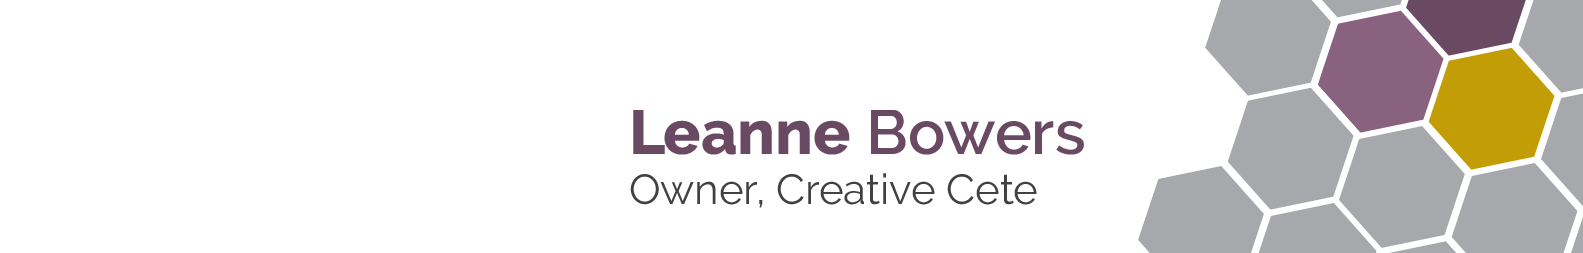 Leanne Bowers のプロファイルバナー